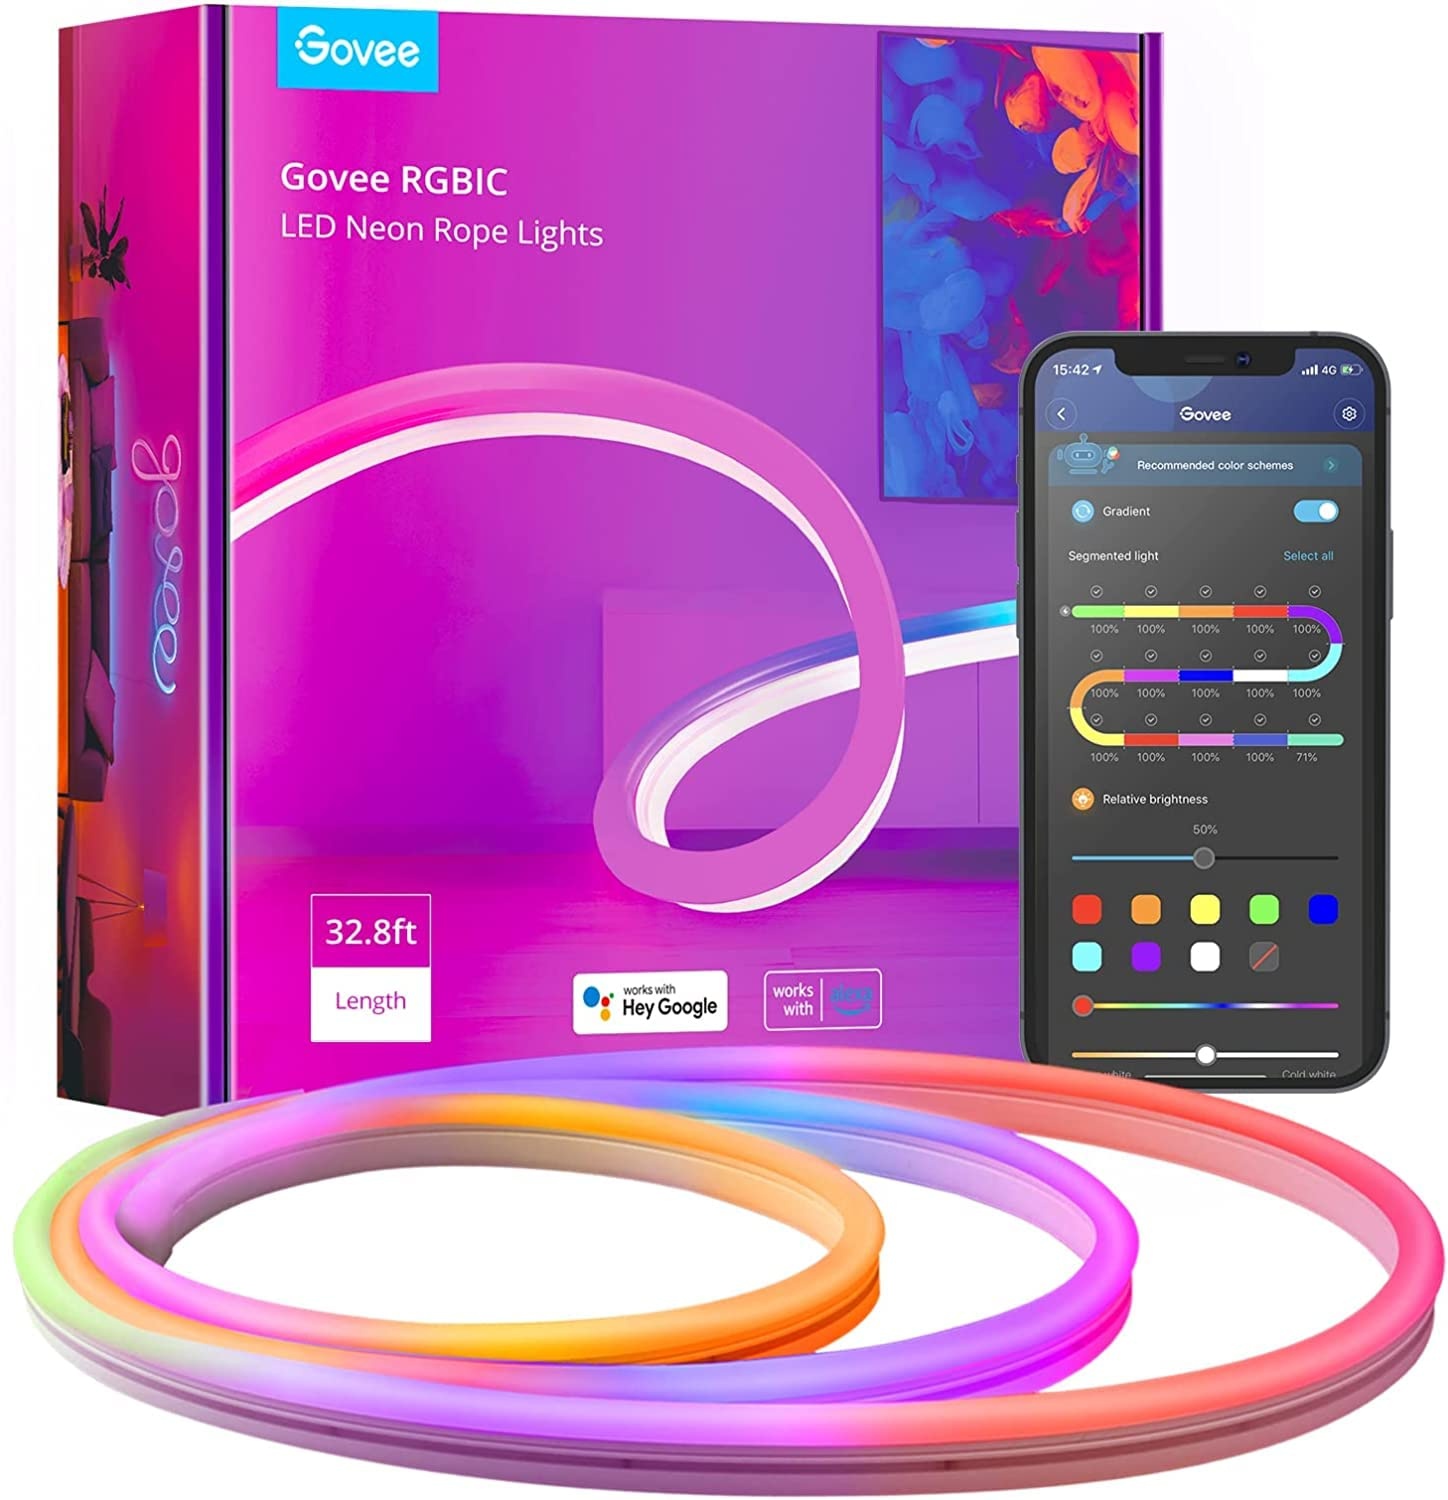 Govee Neon LED Strip 10m, RGBIC Streifen mit App-Steuerung, Musik-Sync, DIY-Farbwechsel Lichtband, Funktioniert mit Alexa & Google Assistant, Licht Band für Decke, Küche, Gaming